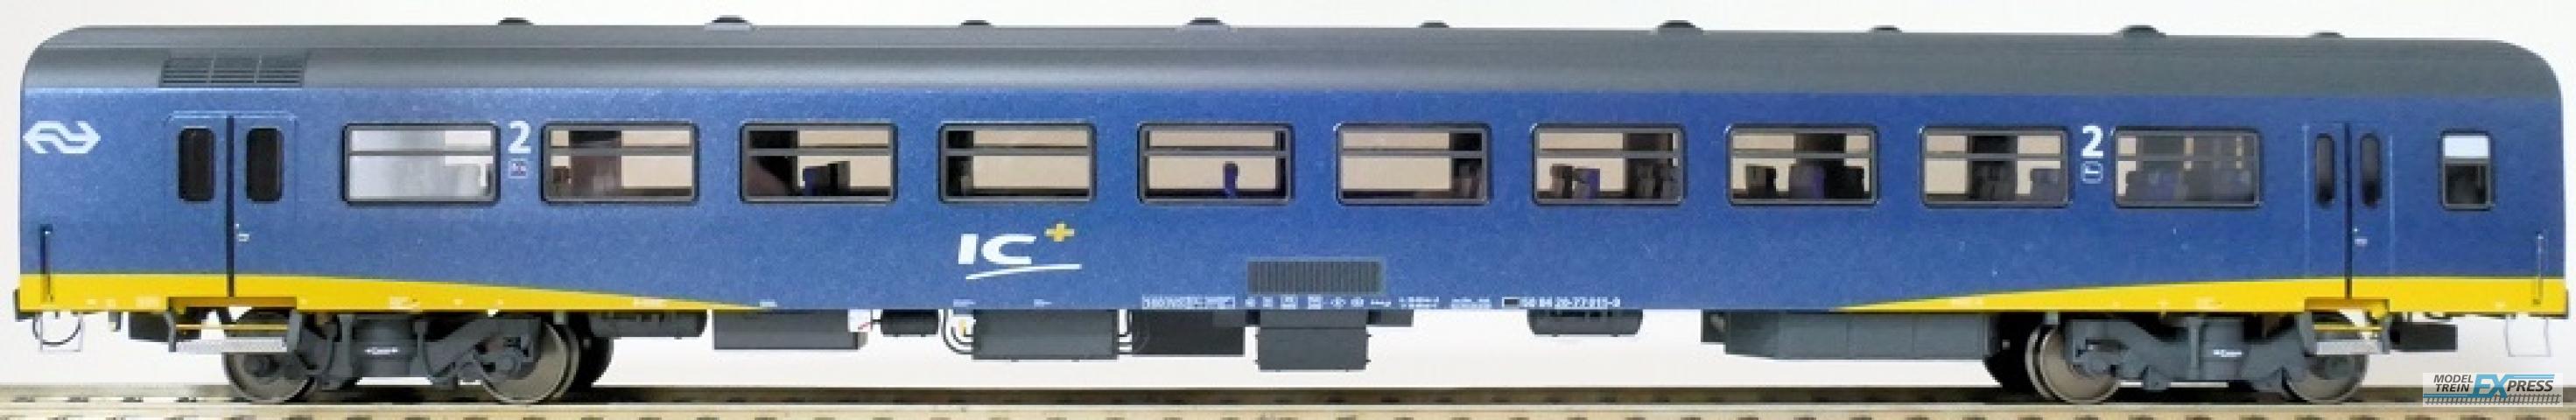 Exact-train 11123 NS ICR Plus Reisezugwagen B ( Farbe Blau), Ep. IV